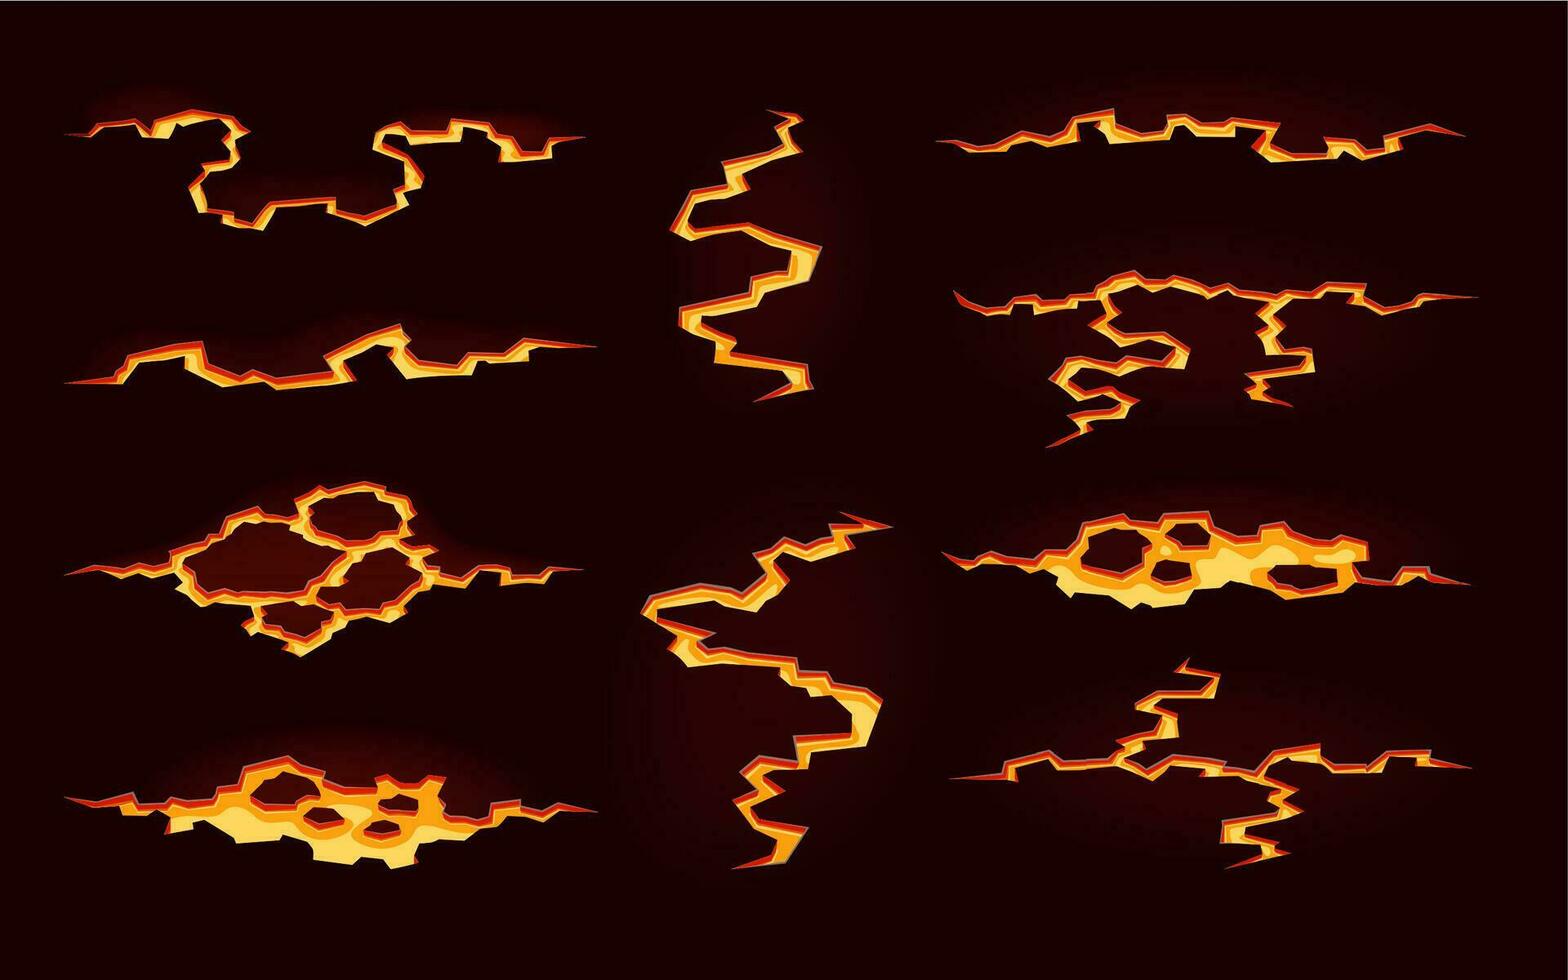 volcán magma lava, fuego suelo grietas dibujos animados conjunto vector